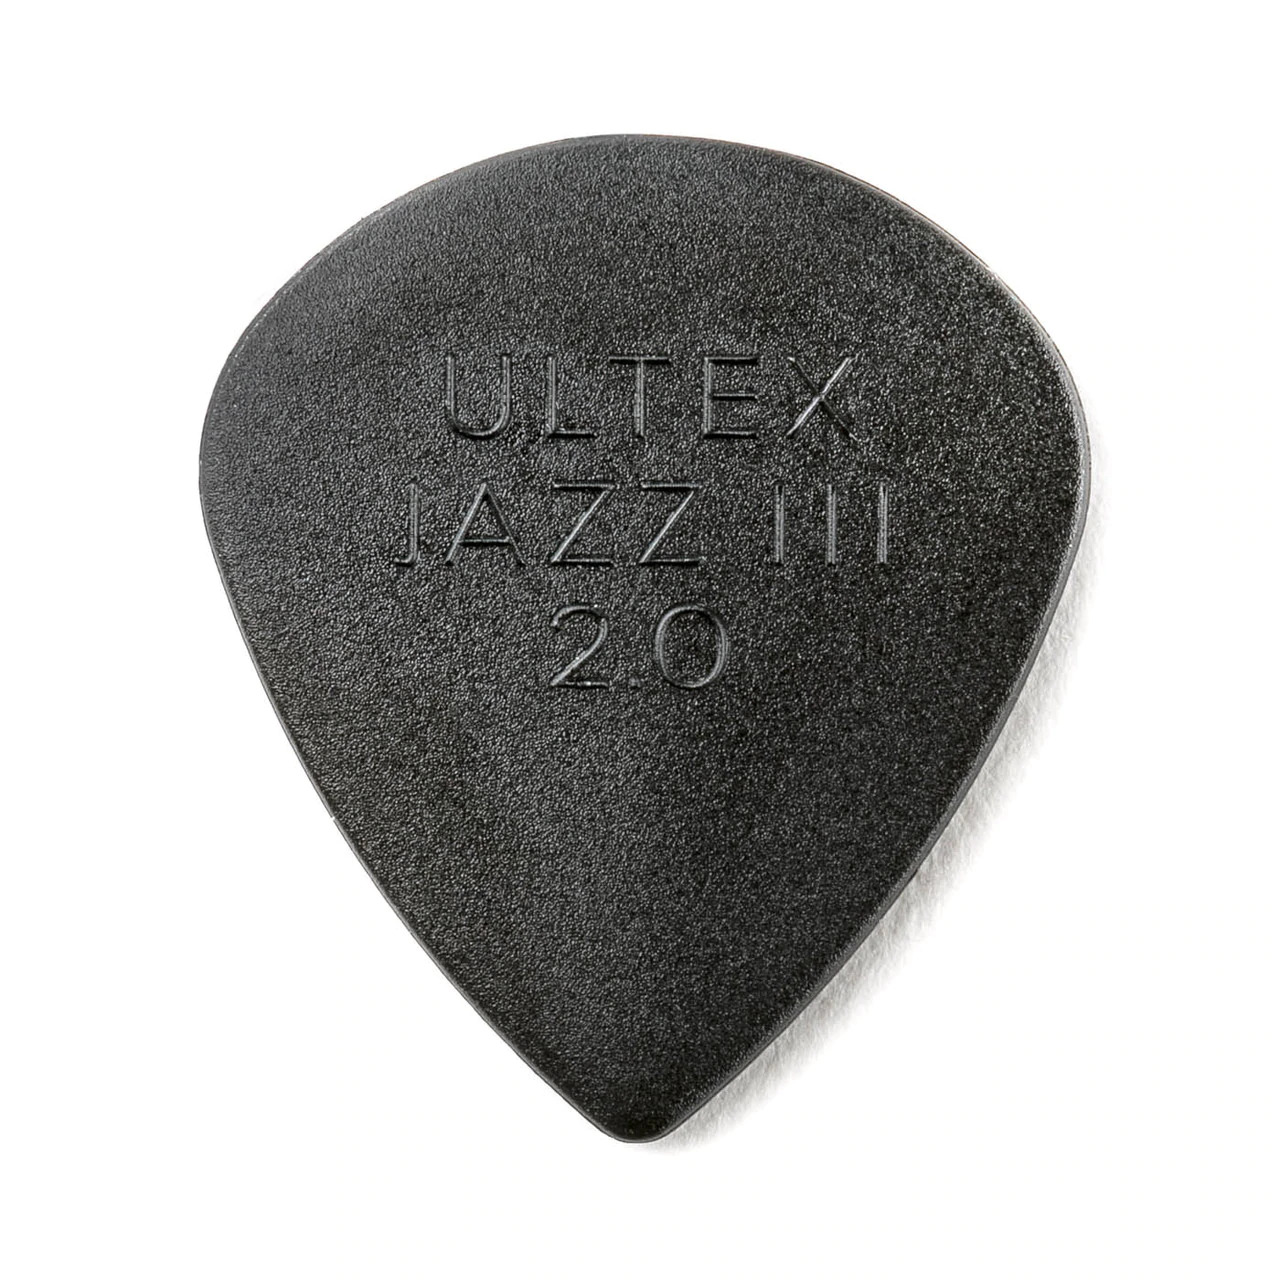 Dunlop 427P200 ULTEX® Jazz III 2.0mm - 6 Pack